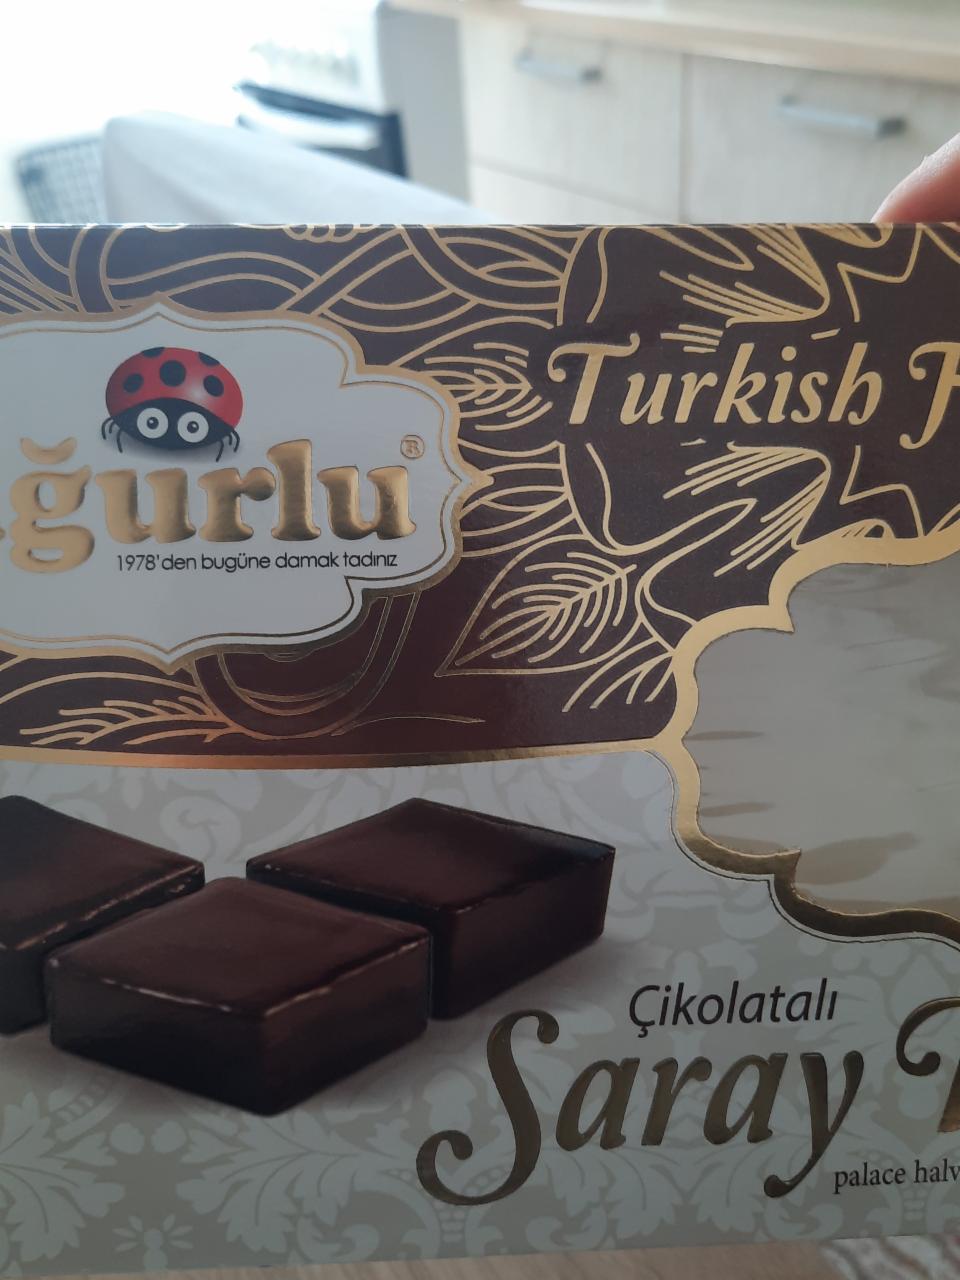 Фото - пахлава в шоколаде Gurlu